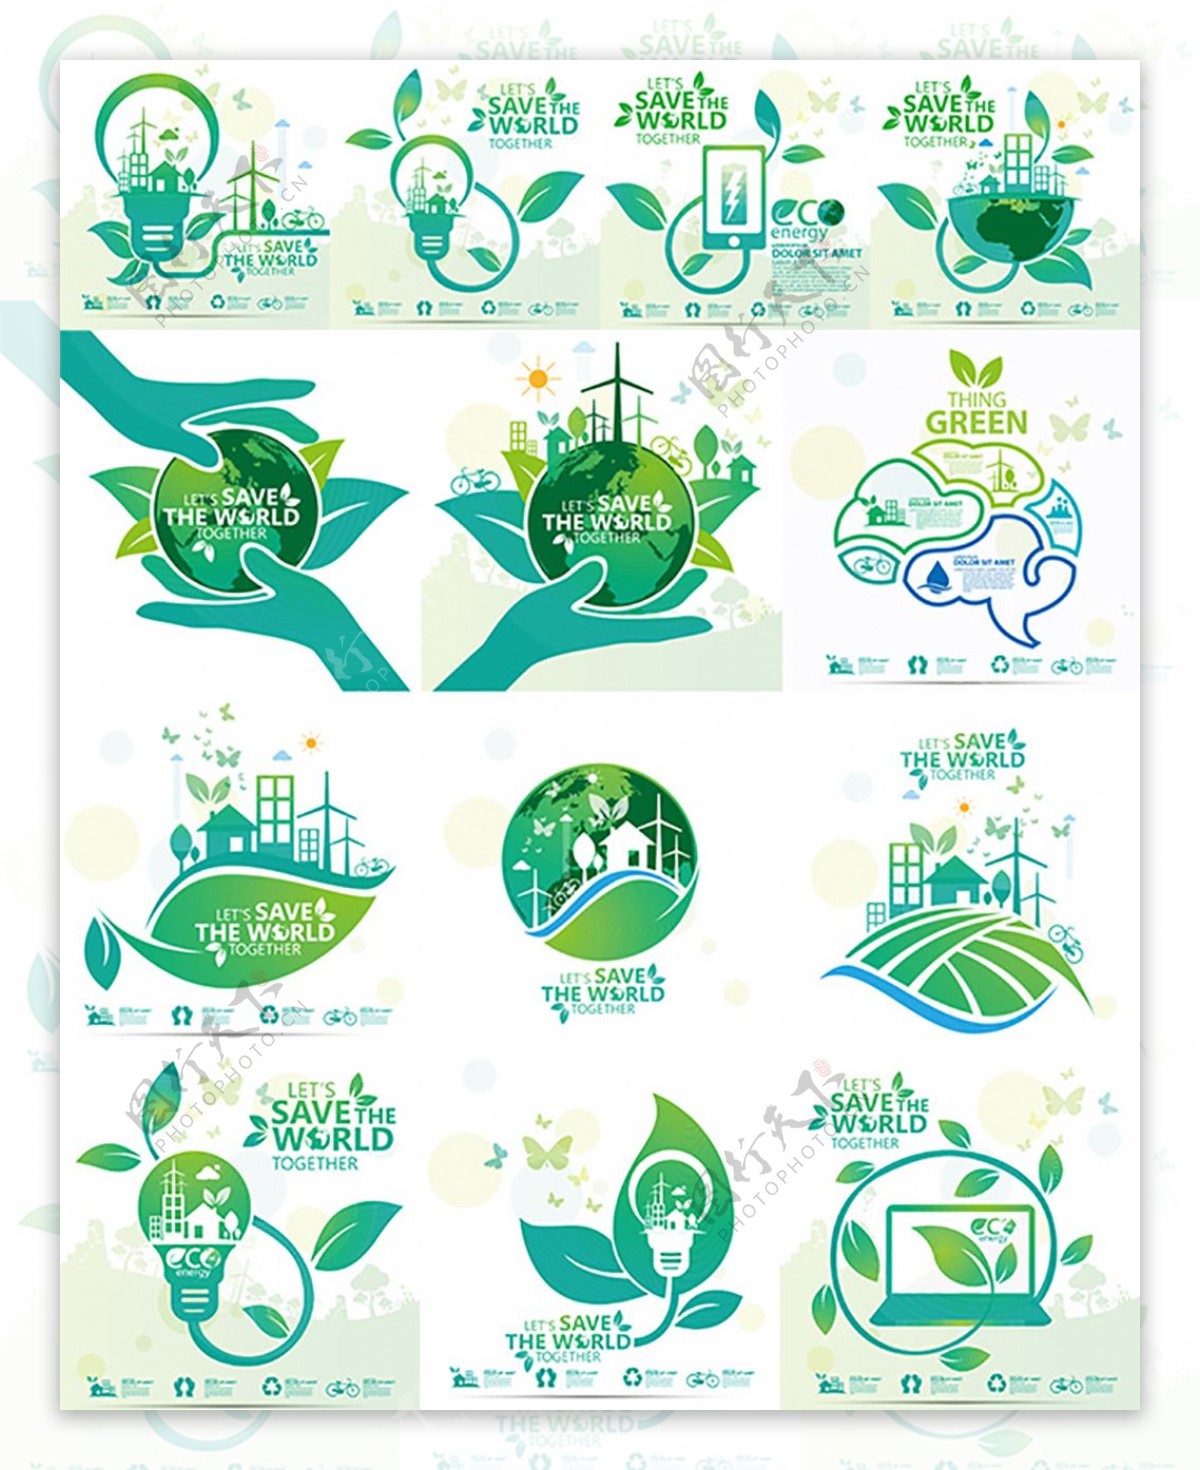 绿色环保图标设计矢量素材